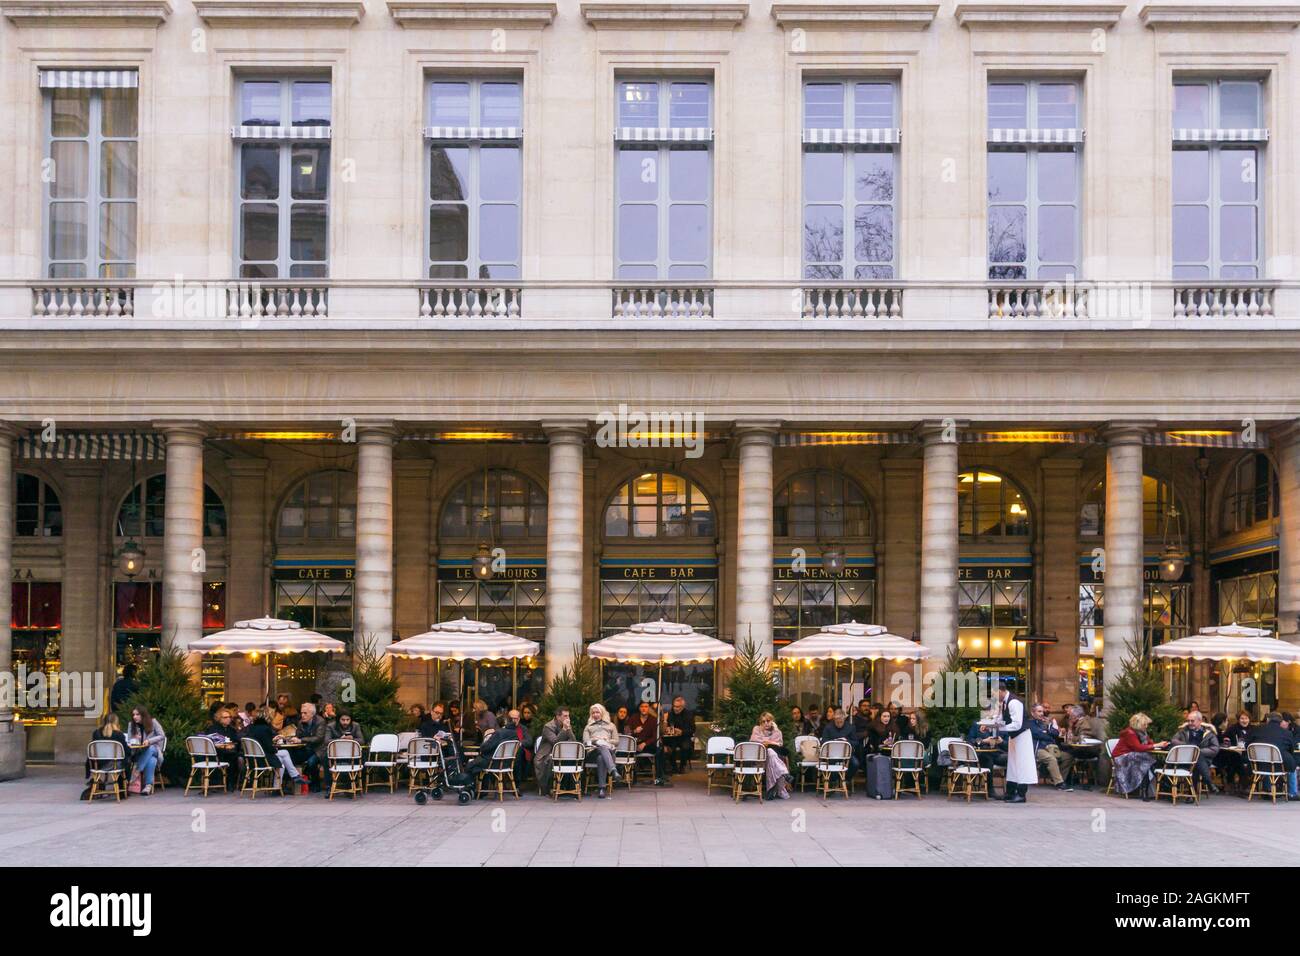 Paris Le Nemours - patrons having drinks at Le Nemours cafe bar in Place Colette in the 1st arrondissement of Paris, France, Europe. Stock Photo